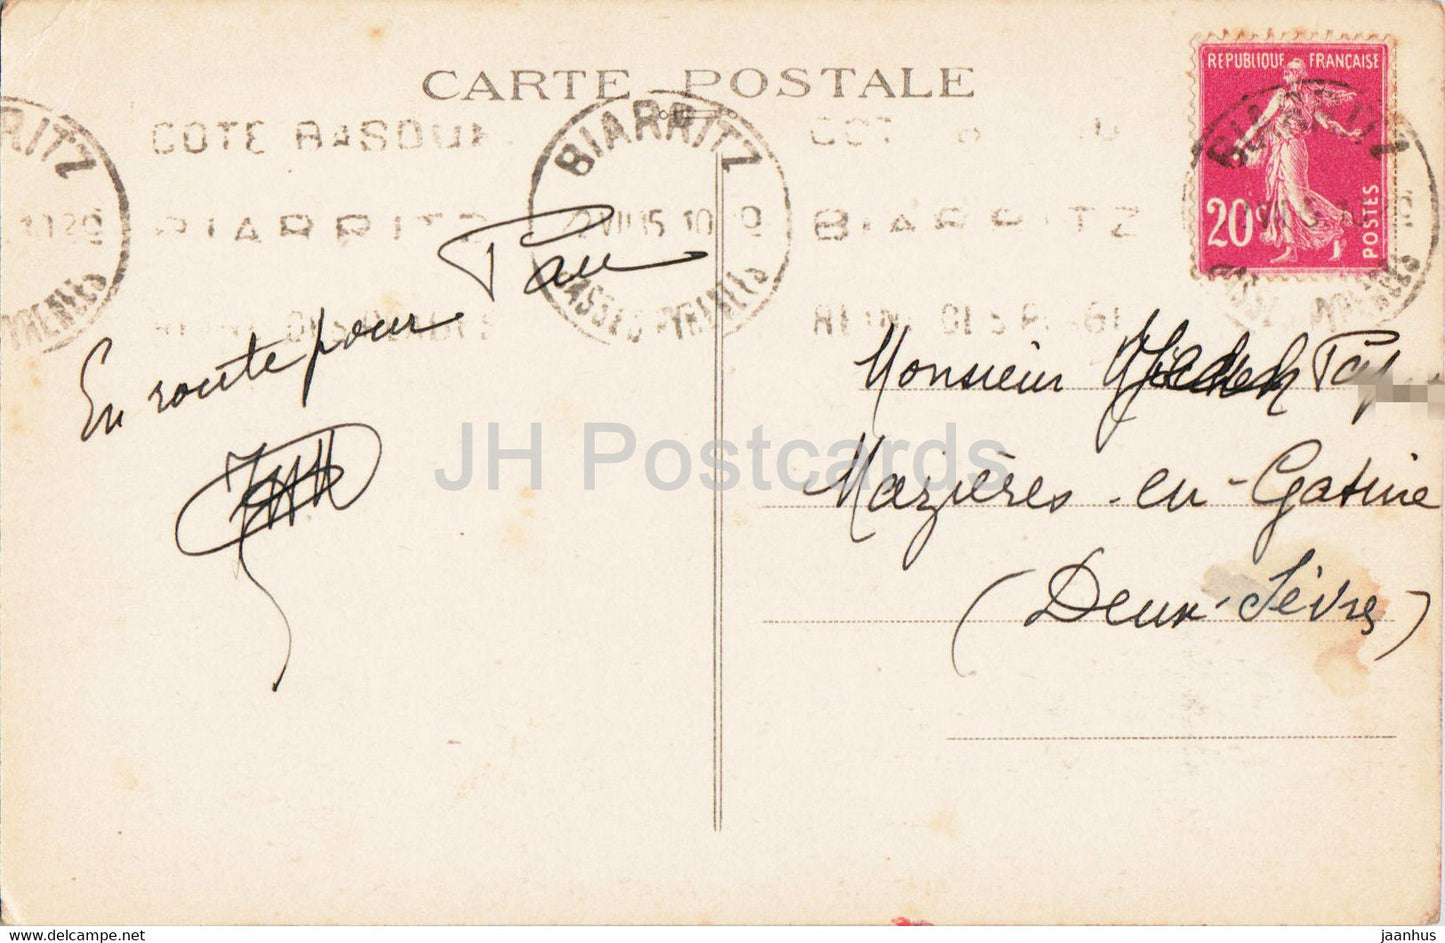 Biarritz - Rocher de la Vierge - Entree du Port Vieux - 15 - alte Postkarte - 1935 - Frankreich - gebraucht